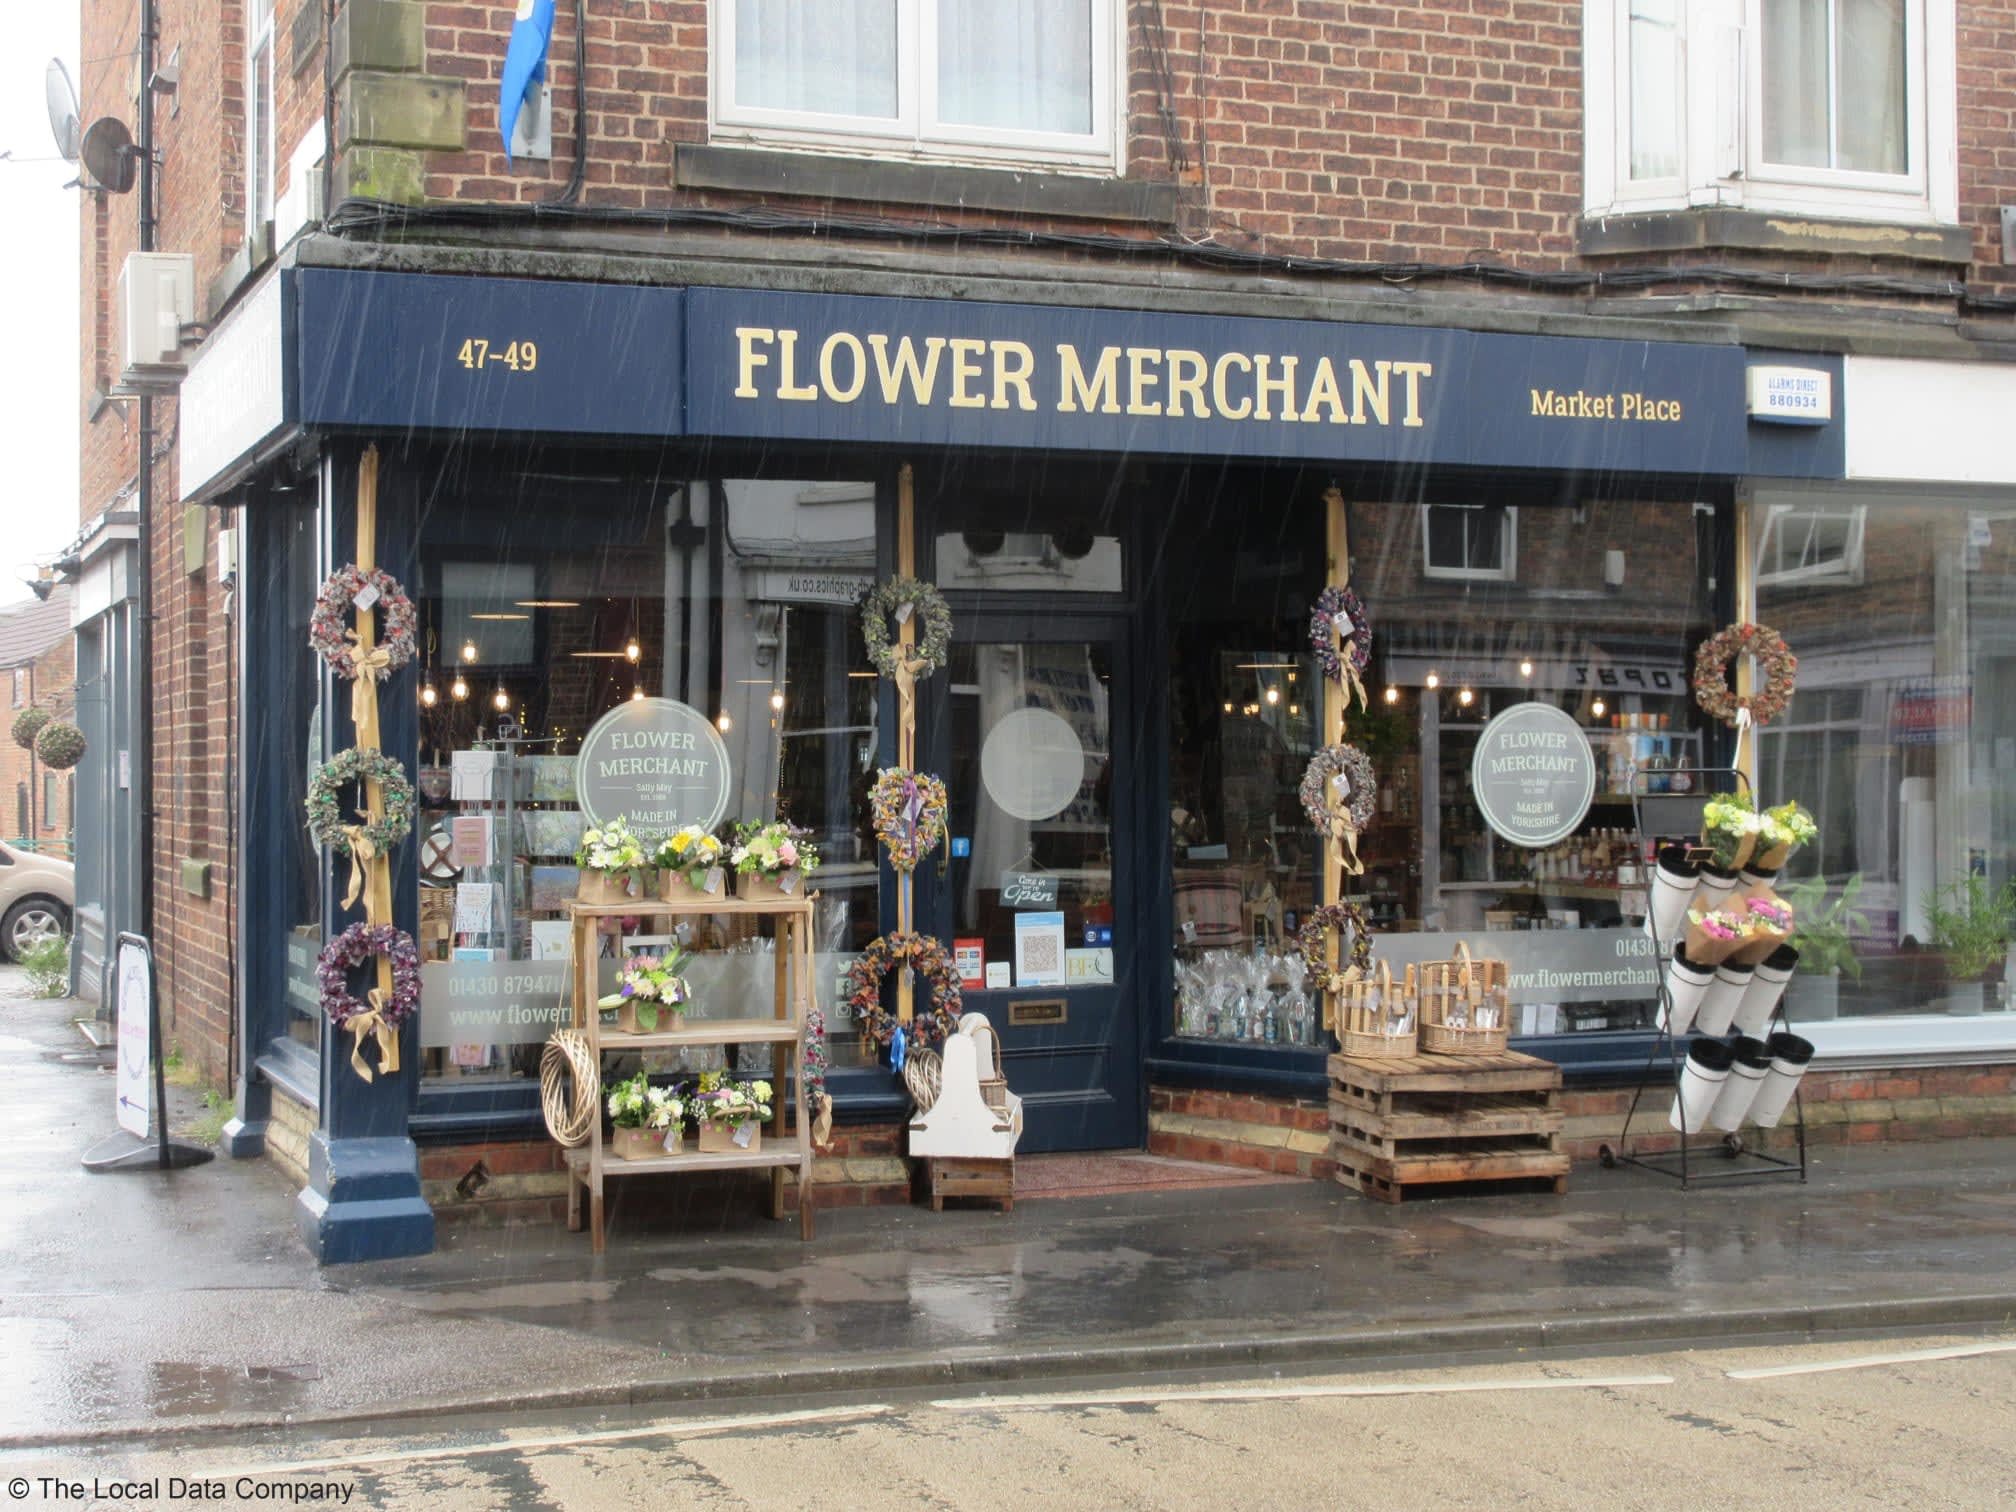 Images Flower Merchant